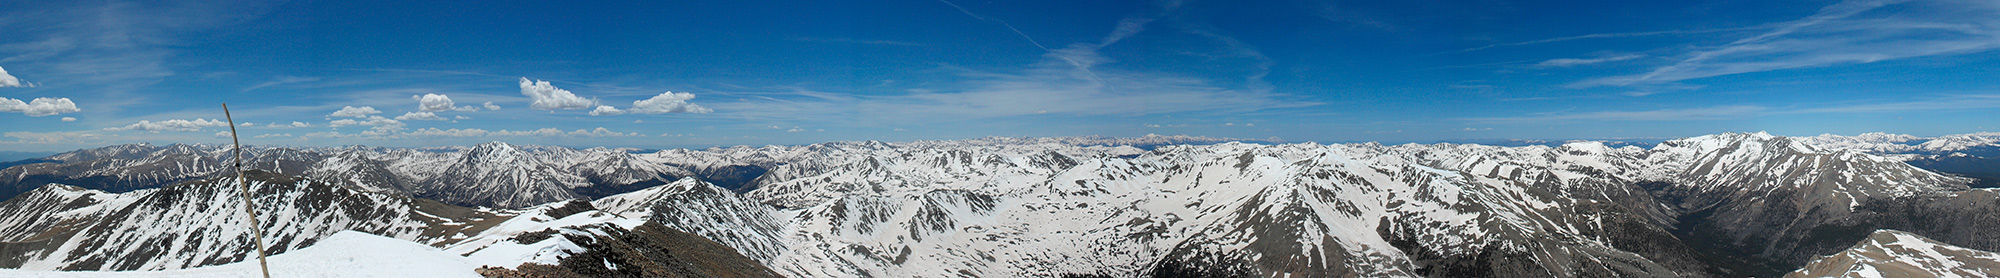 Фотообои горизонтальные горная панорама (nature-00231)